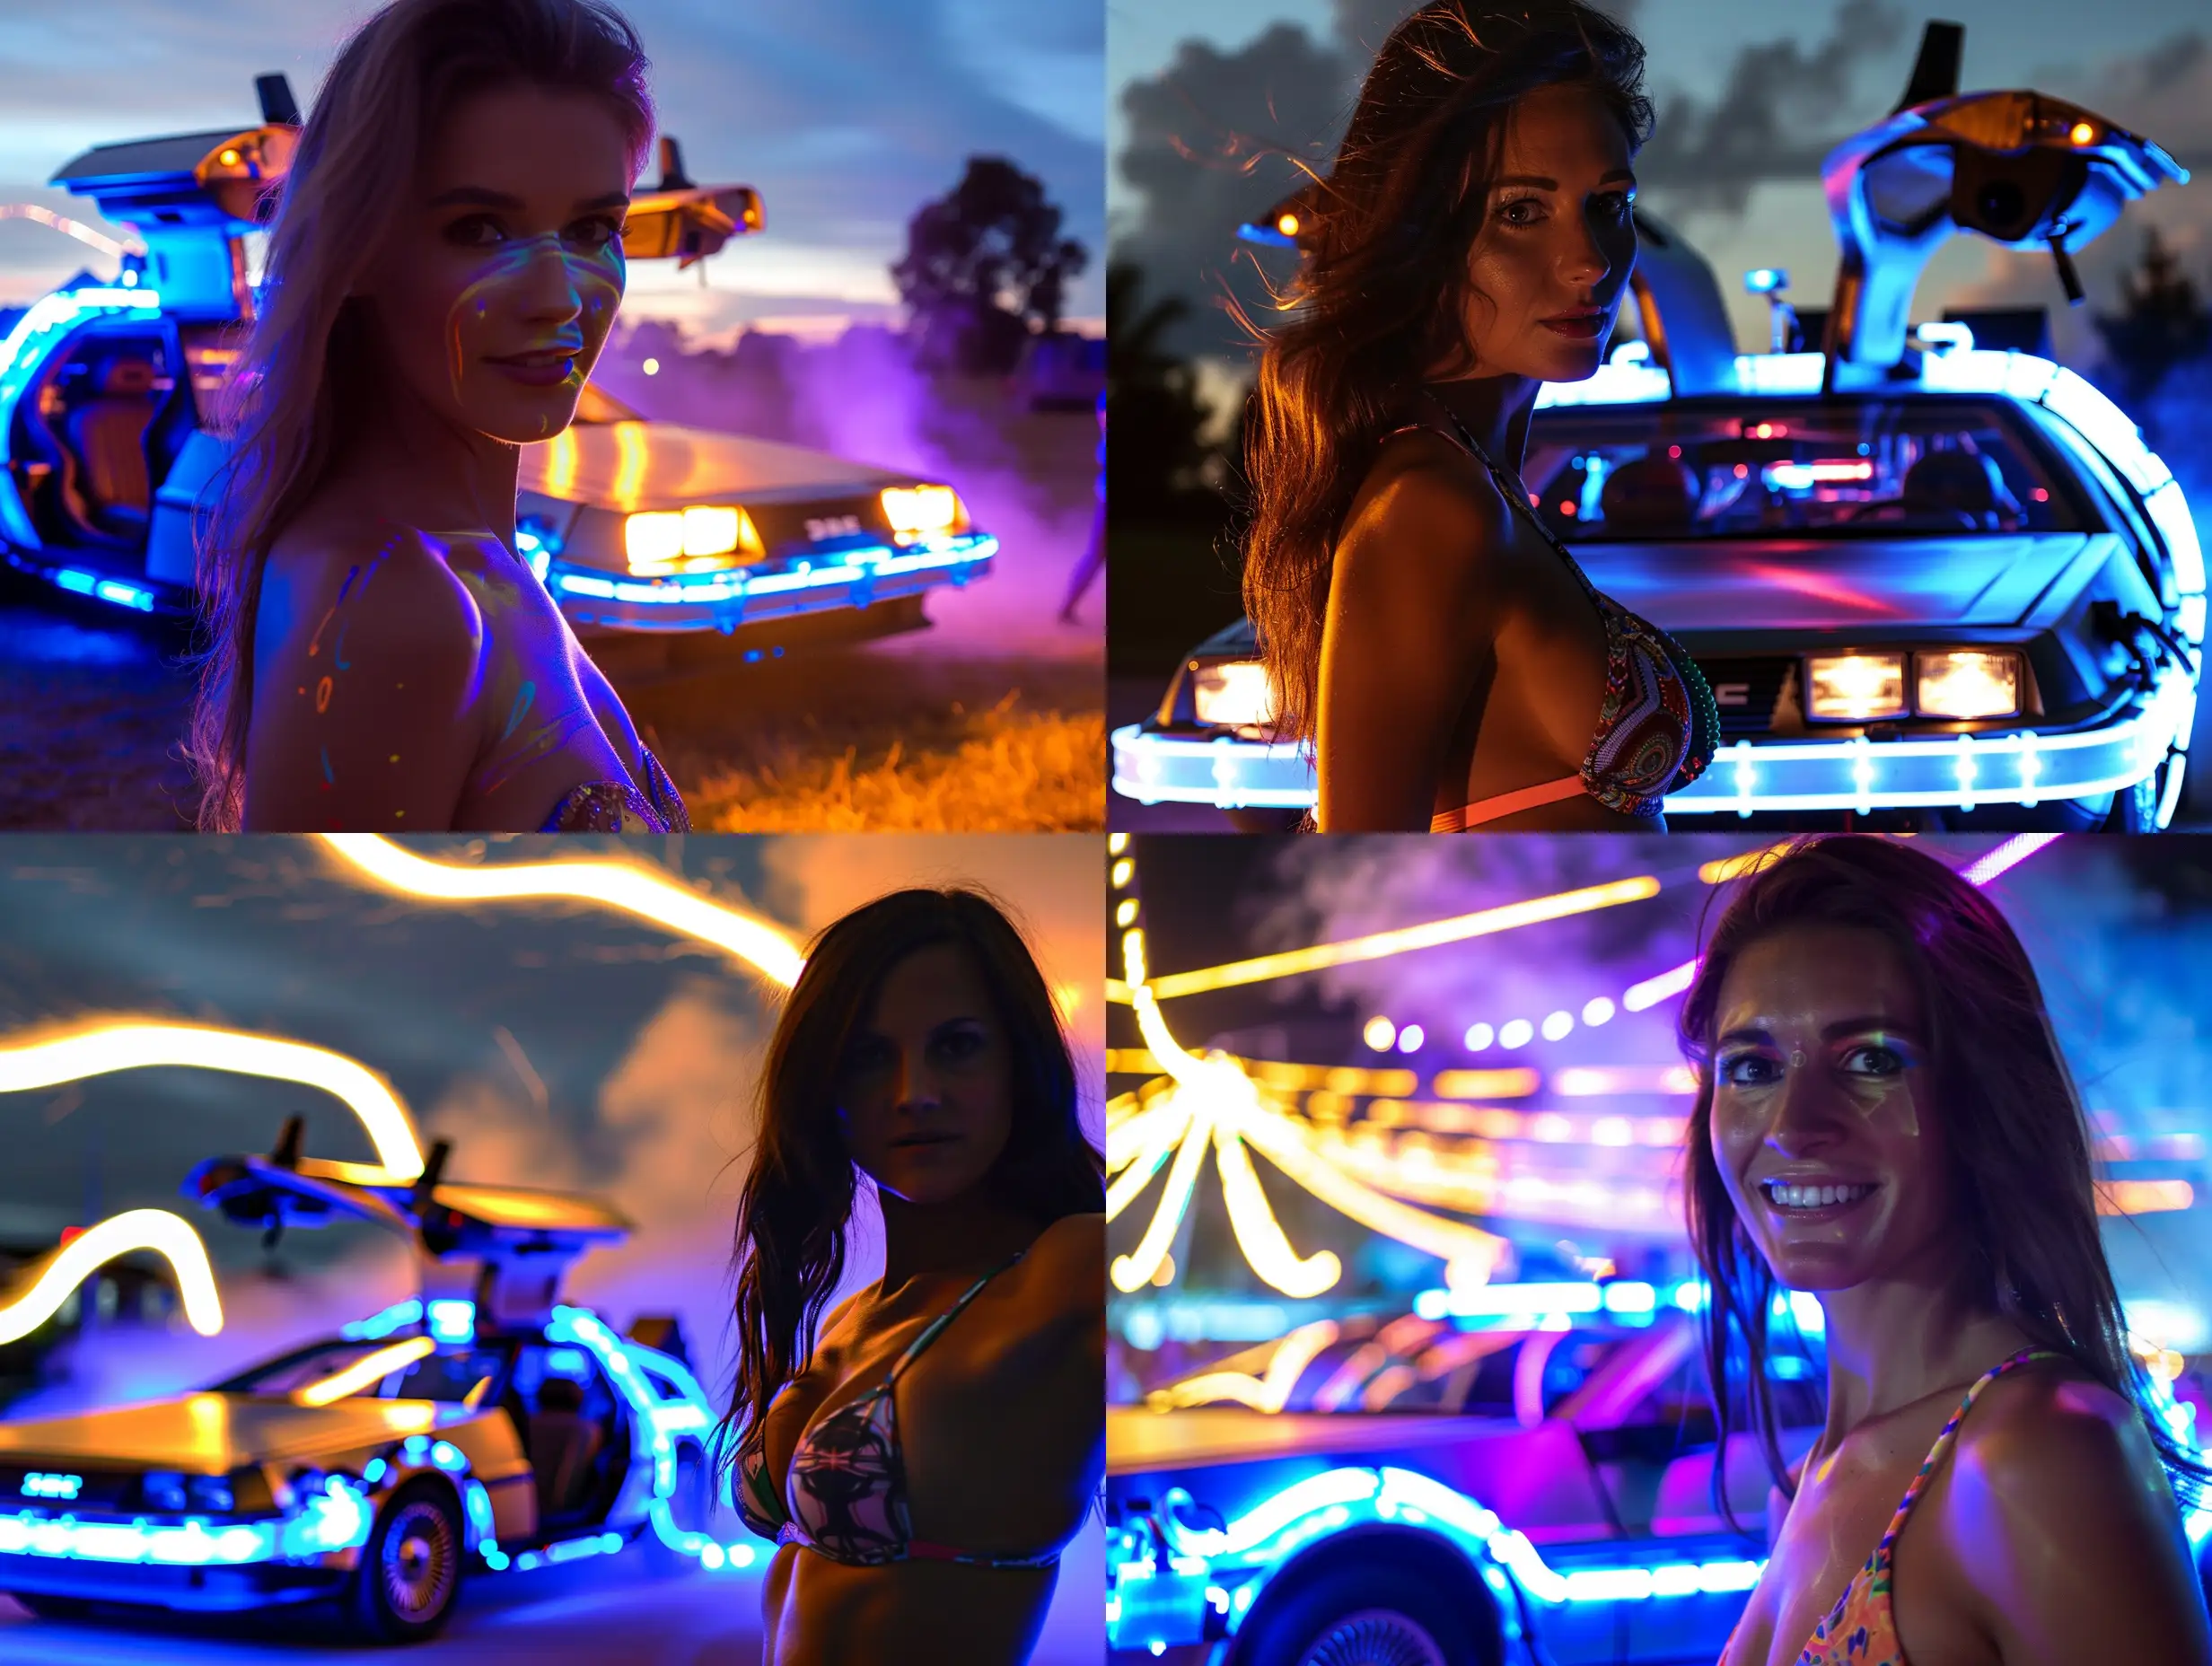 Futuristic-Delorean-with-Neon-Lights-and-Attractive-Woman-in-Bikini